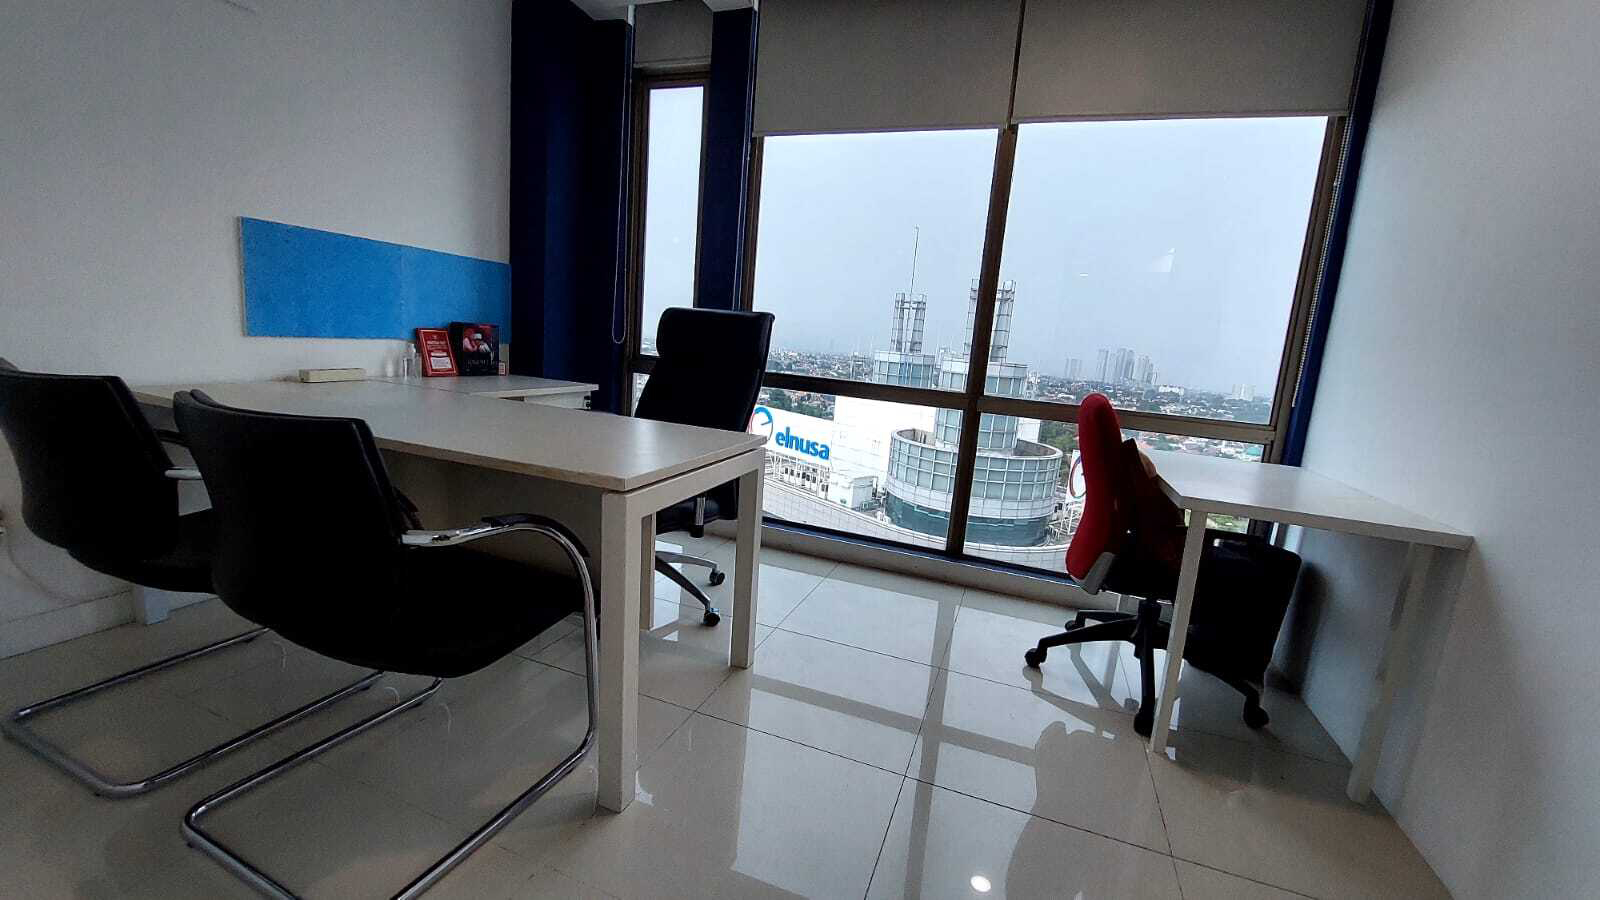 Sewa Kantor di Jakarta Selatan dengan Fasilitas Lengkap